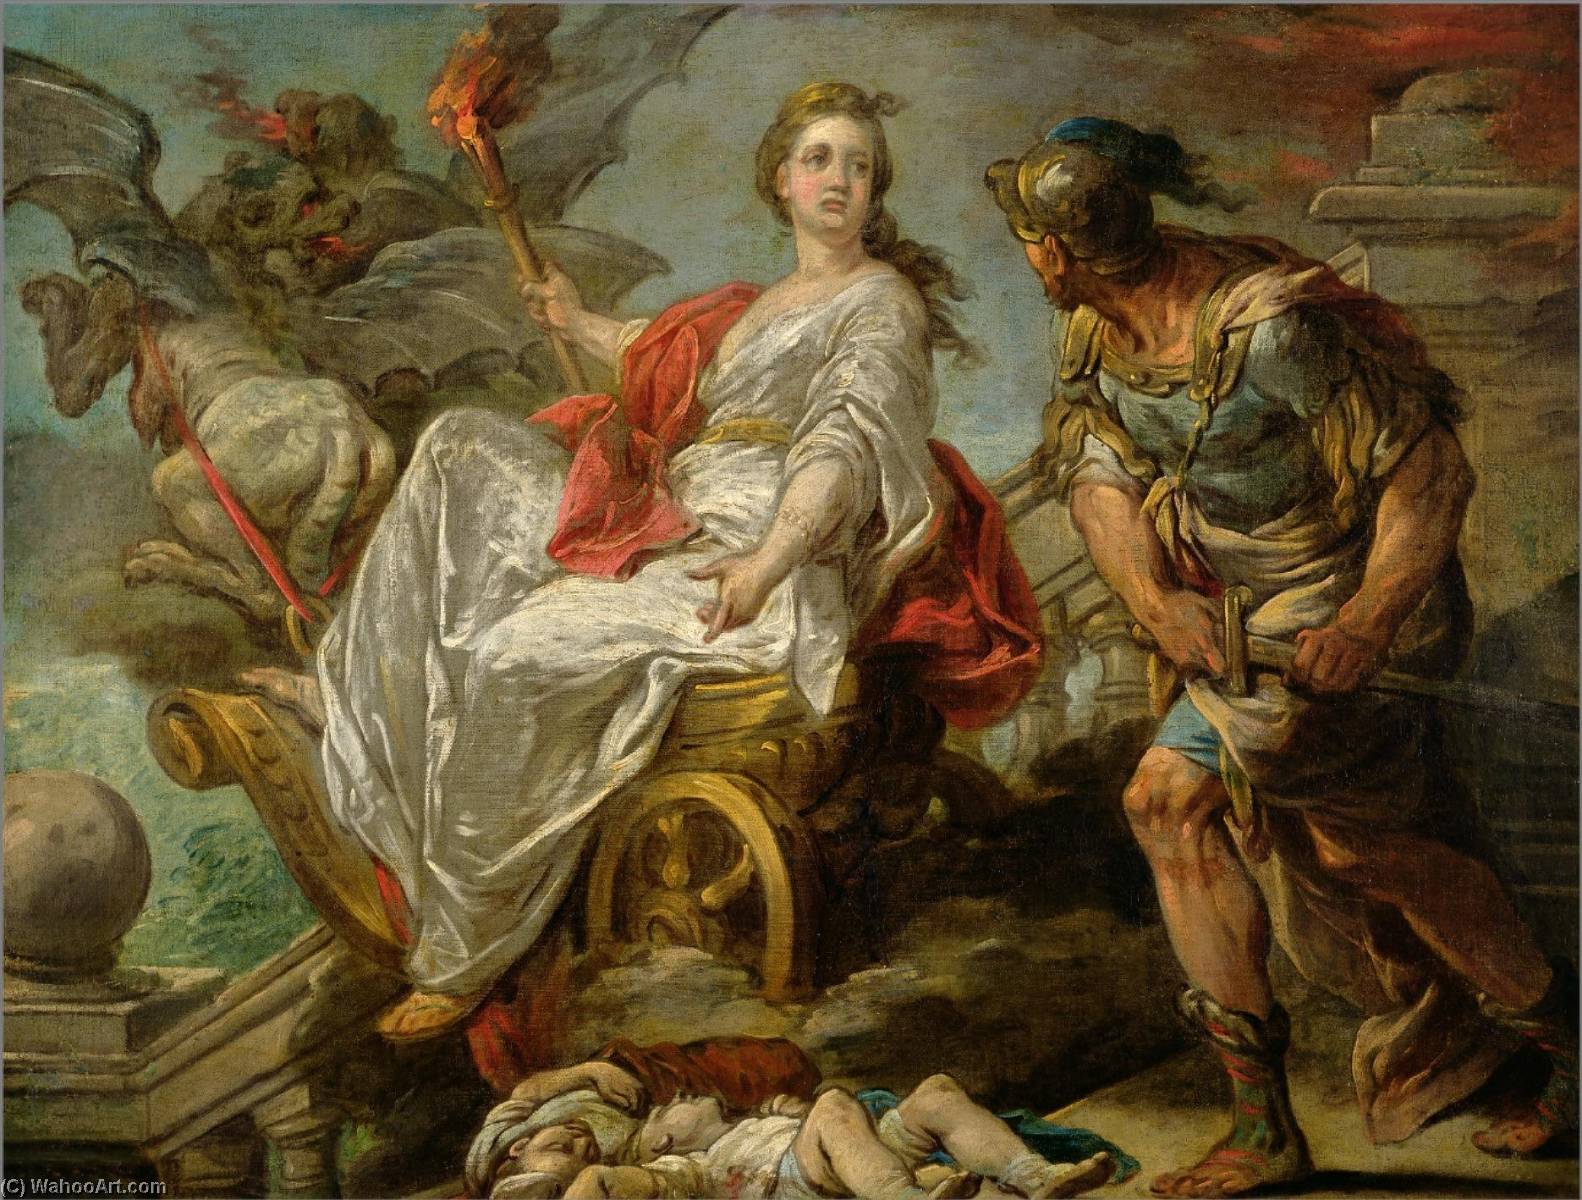 WikiOO.org - Encyclopedia of Fine Arts - Lukisan, Artwork Charles-André Van Loo (Carle Van Loo) - Mademoiselle Clairon as Medea (study)